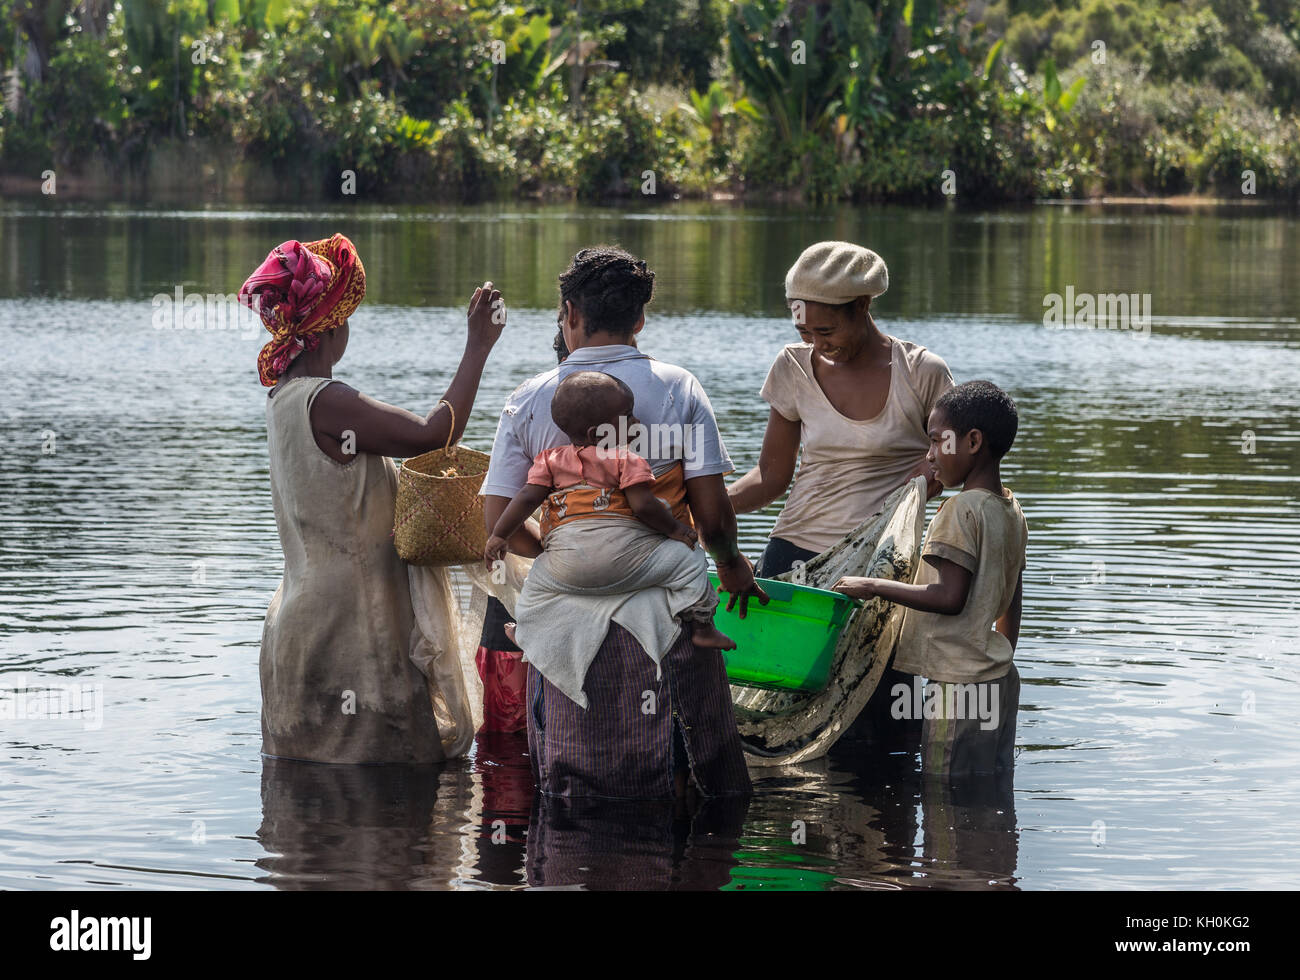 Mehrere madagassische Frauen mit Kindern fangen Fische in einem See. Madagaskar, Afrika. Stockfoto